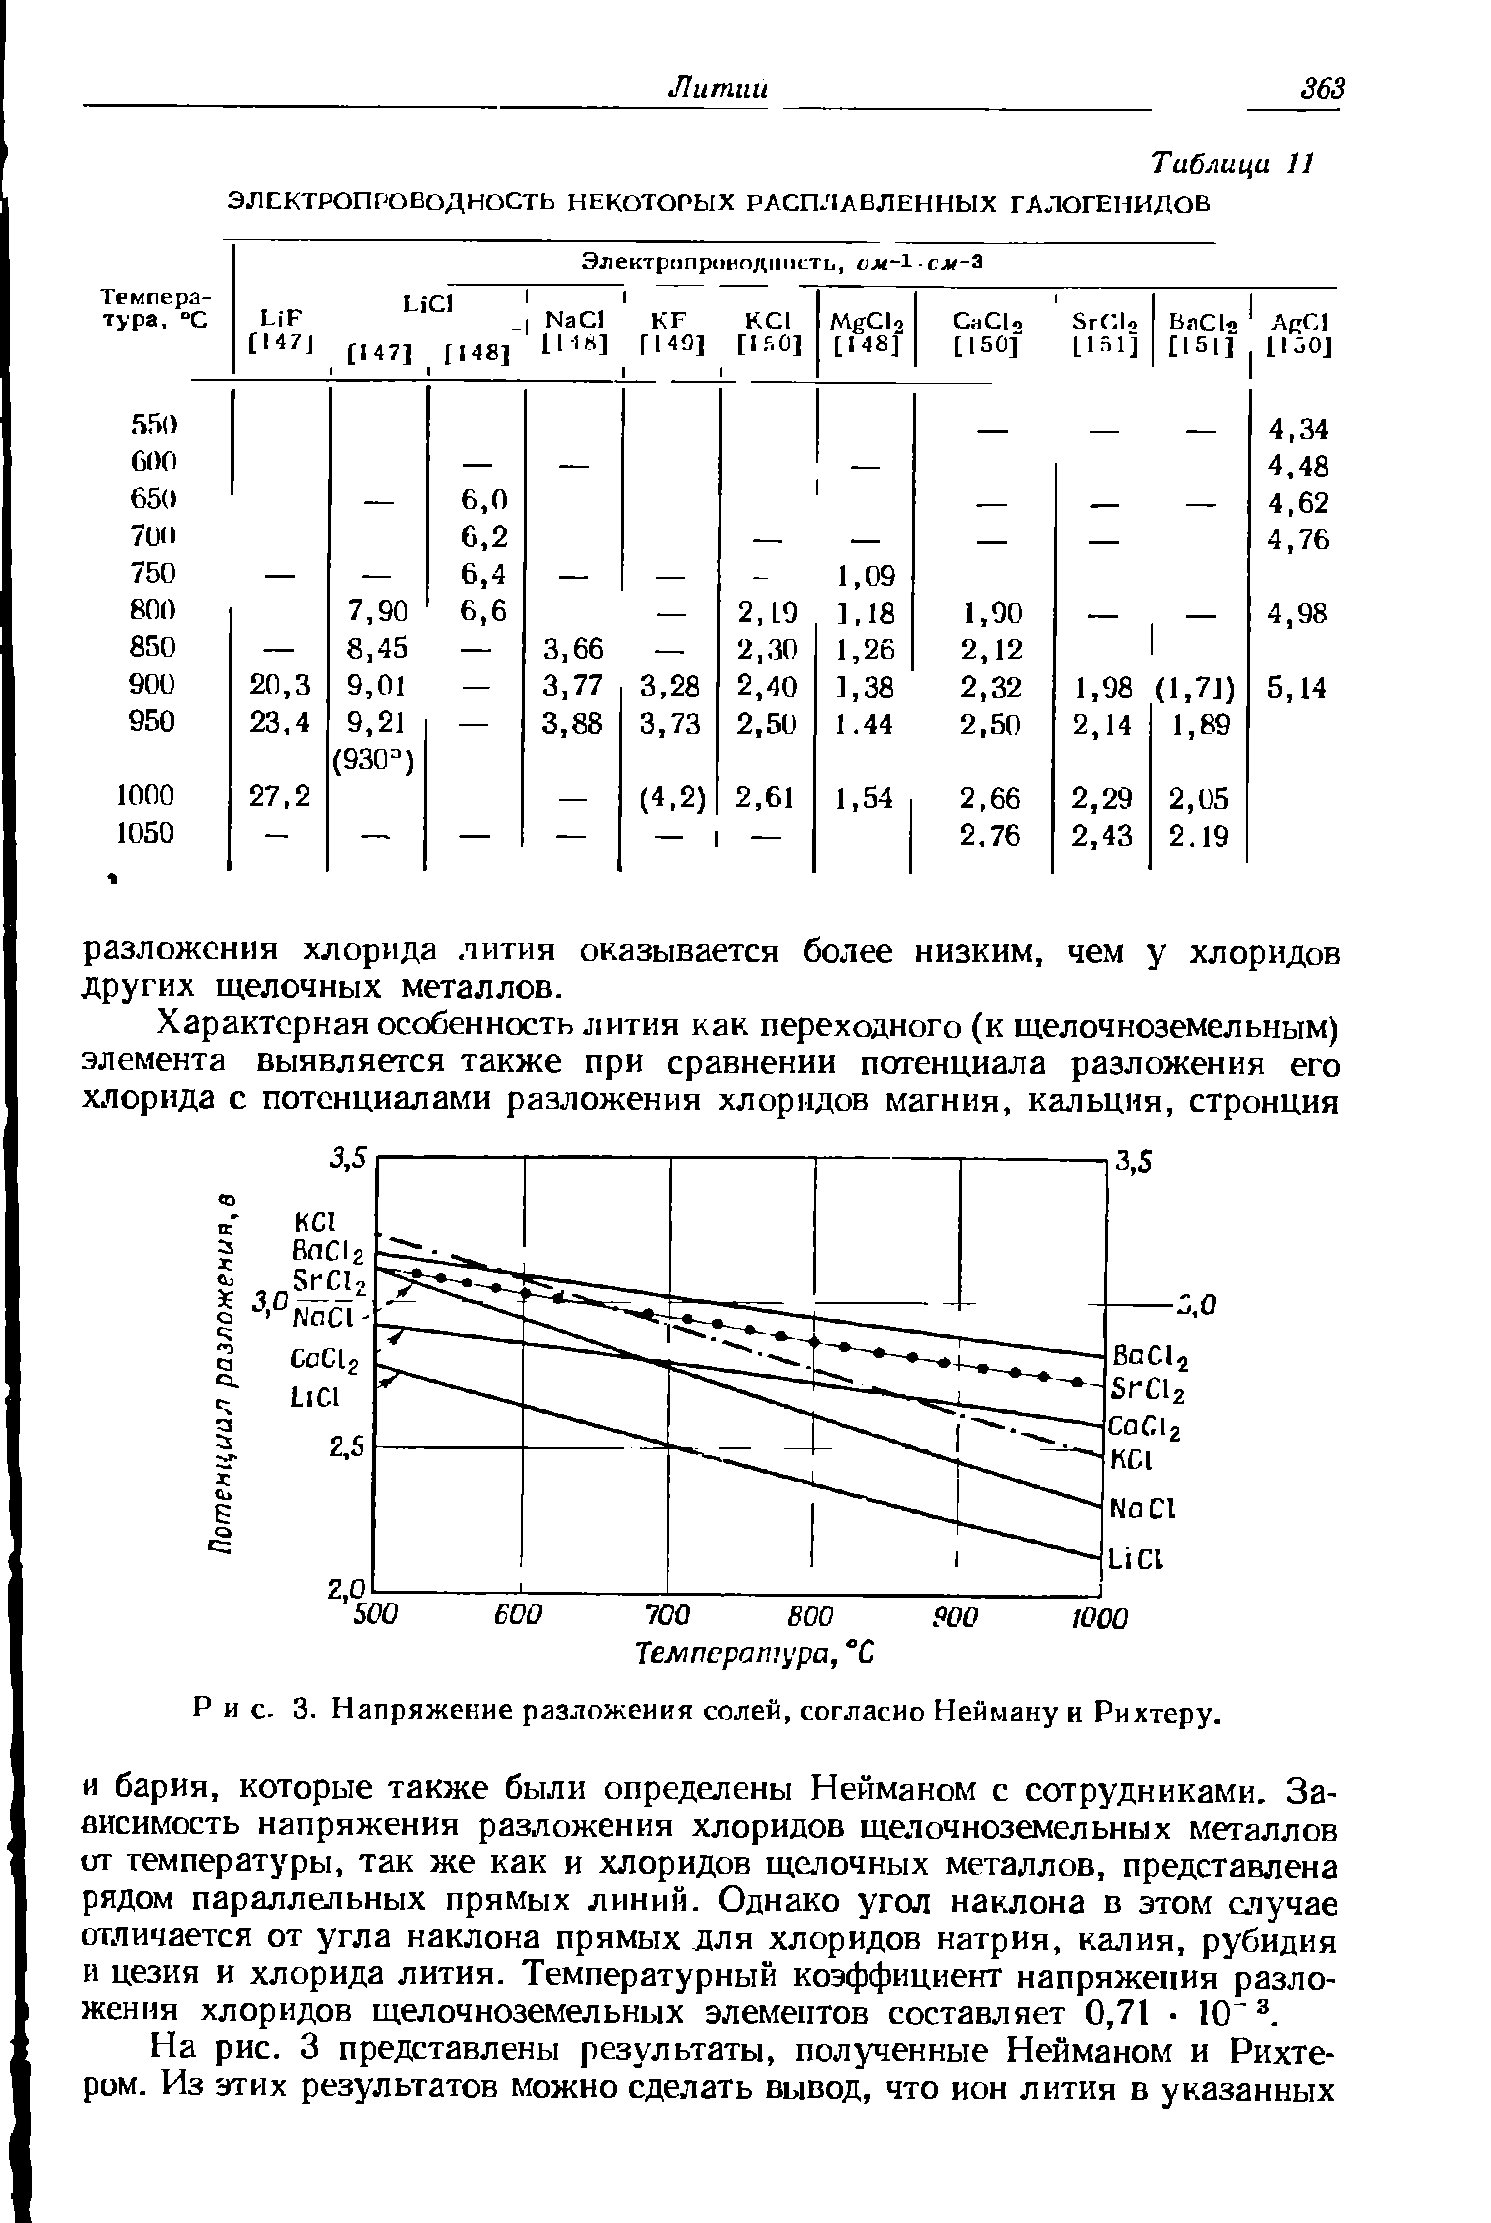 Рис. 3. Напряжение разложения солен, согласно Нейману и Рихтеру.
